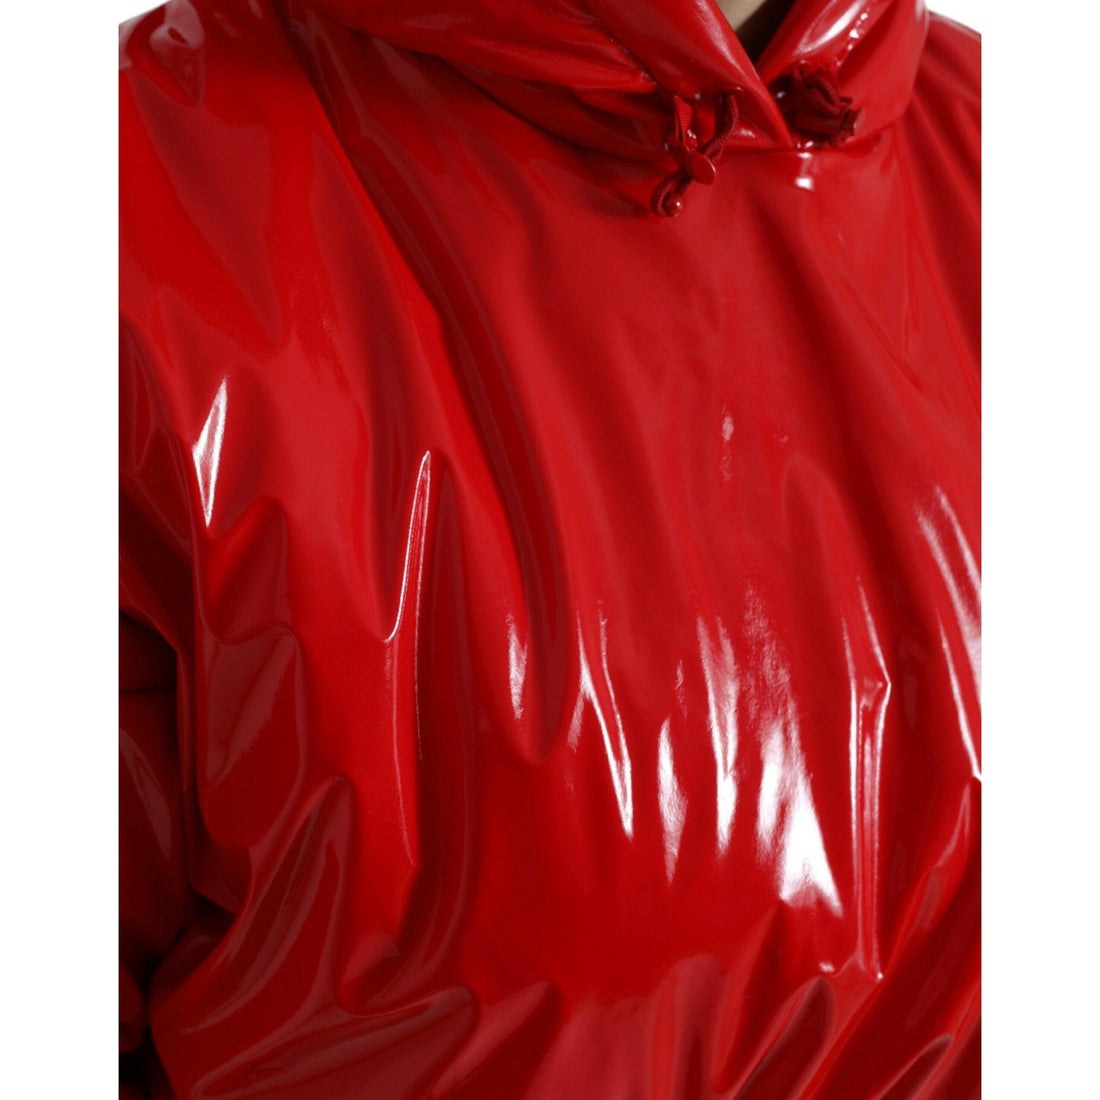 Dolce & Gabbana Shiny Red Hooded Cropped Short Coat Jacket